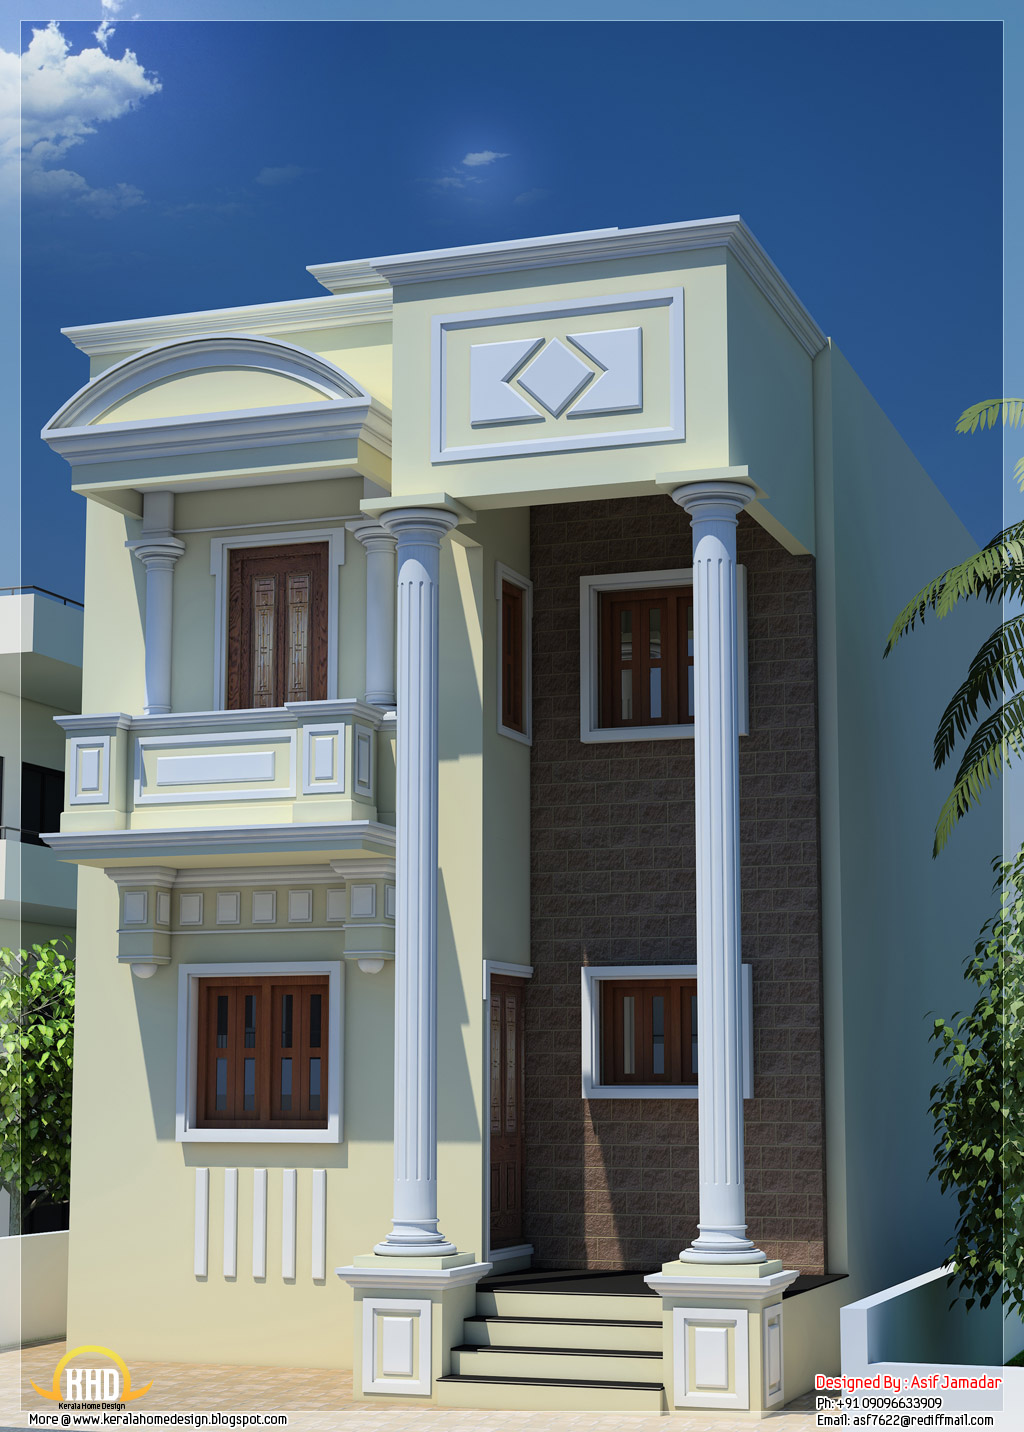  Small  House  Architecture Design  In India  Minimalist Home  